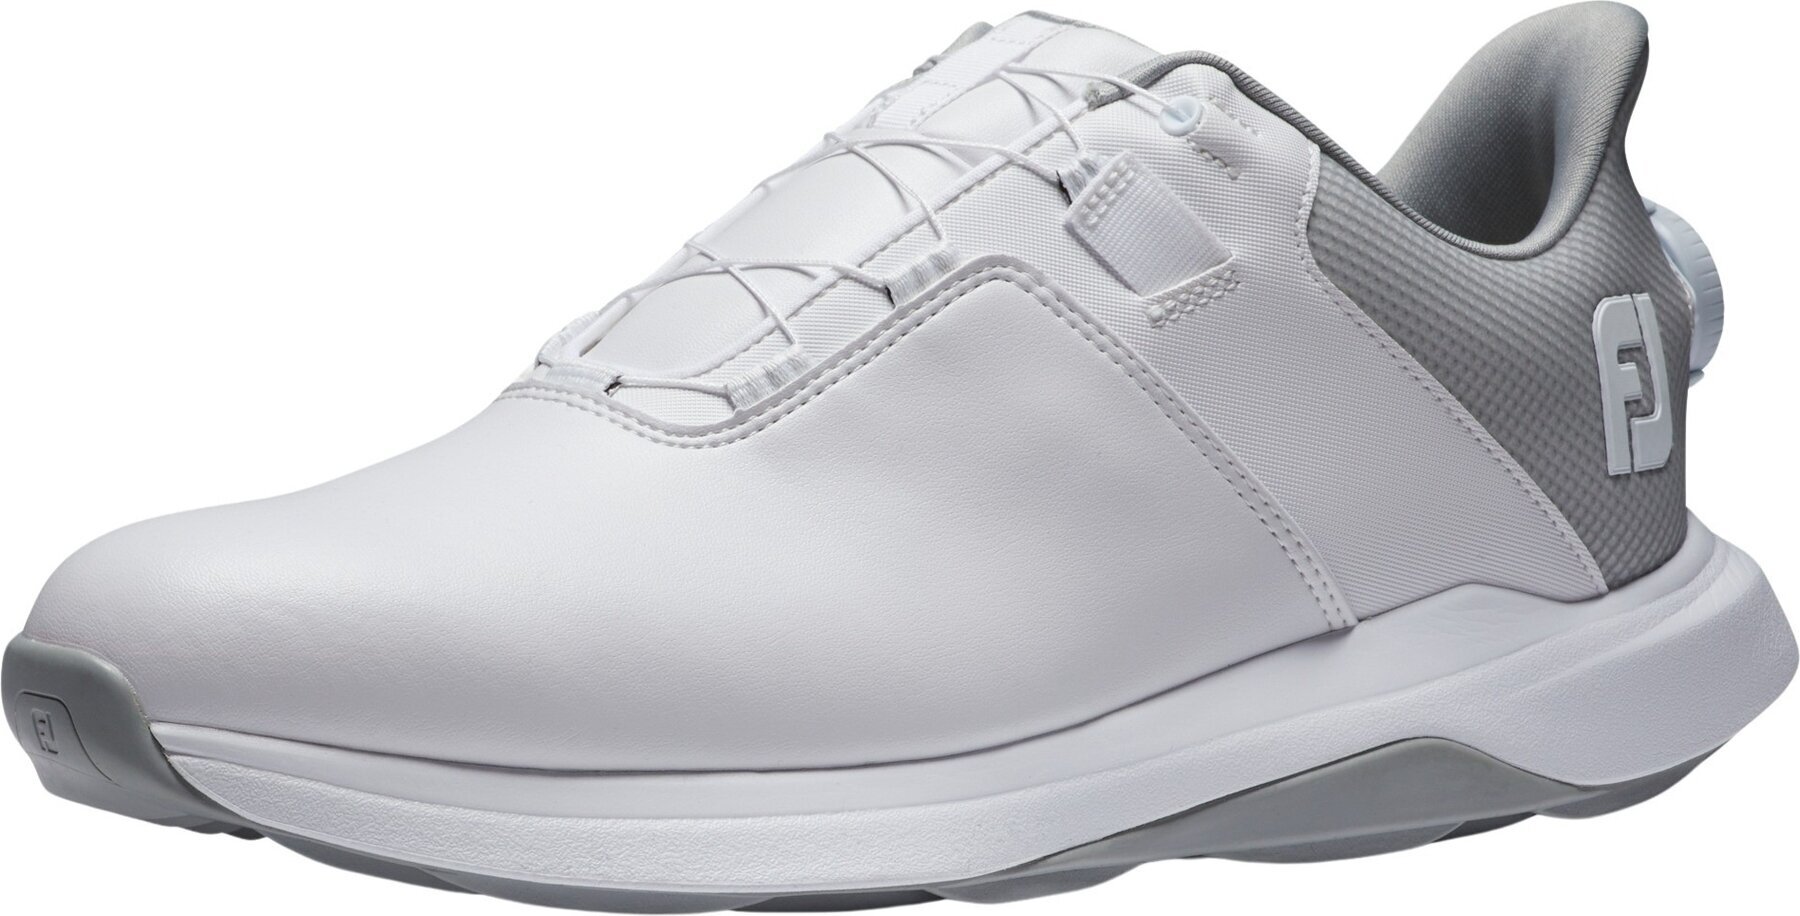 Calçado de golfe para homem Footjoy ProLite Mens Golf Shoes White/White/Grey 46